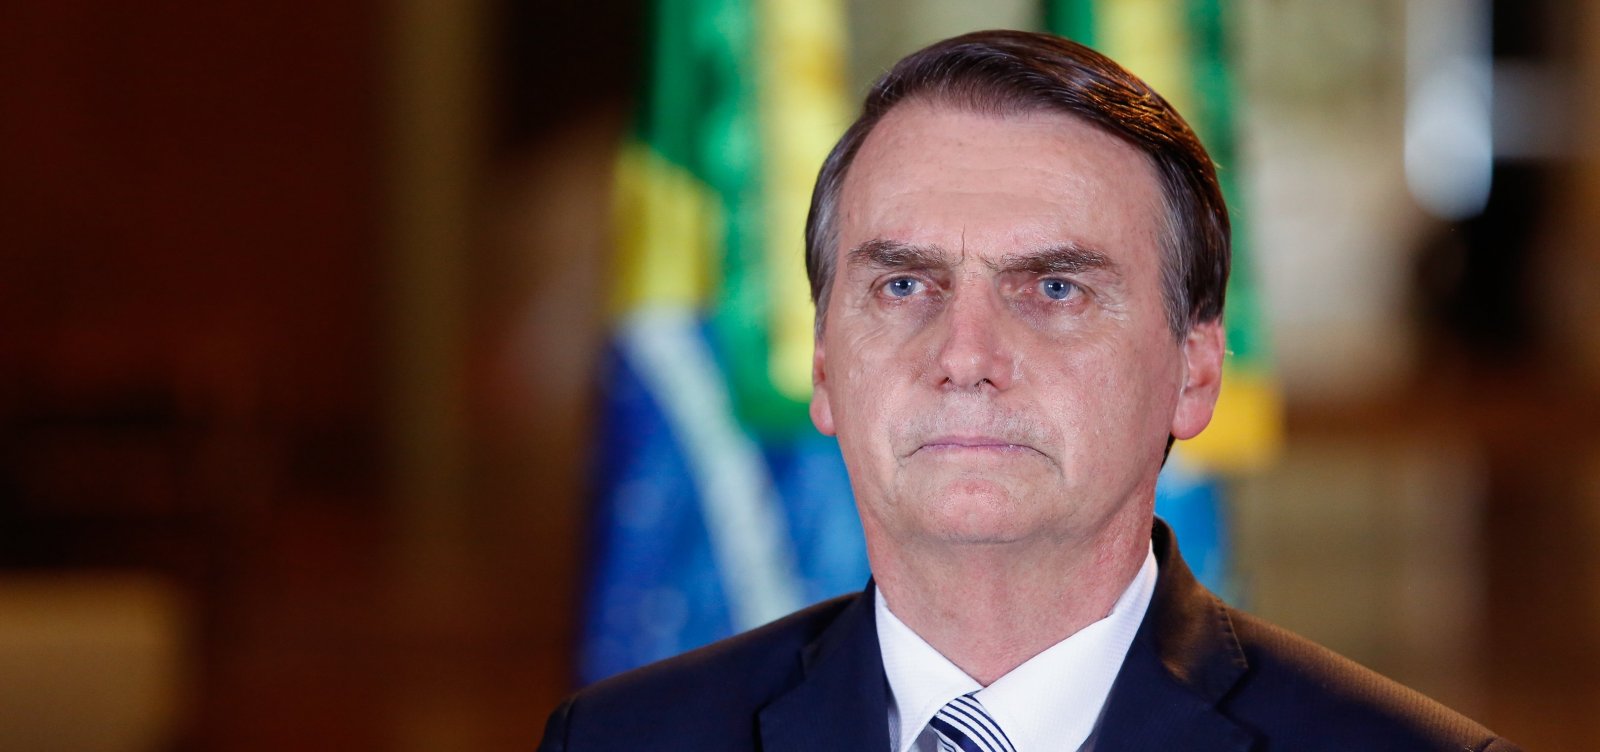  Caso Brasil não tenha voto impresso em 2022, 'vamos ter um problema pior que nos EUA', diz Bolsonaro